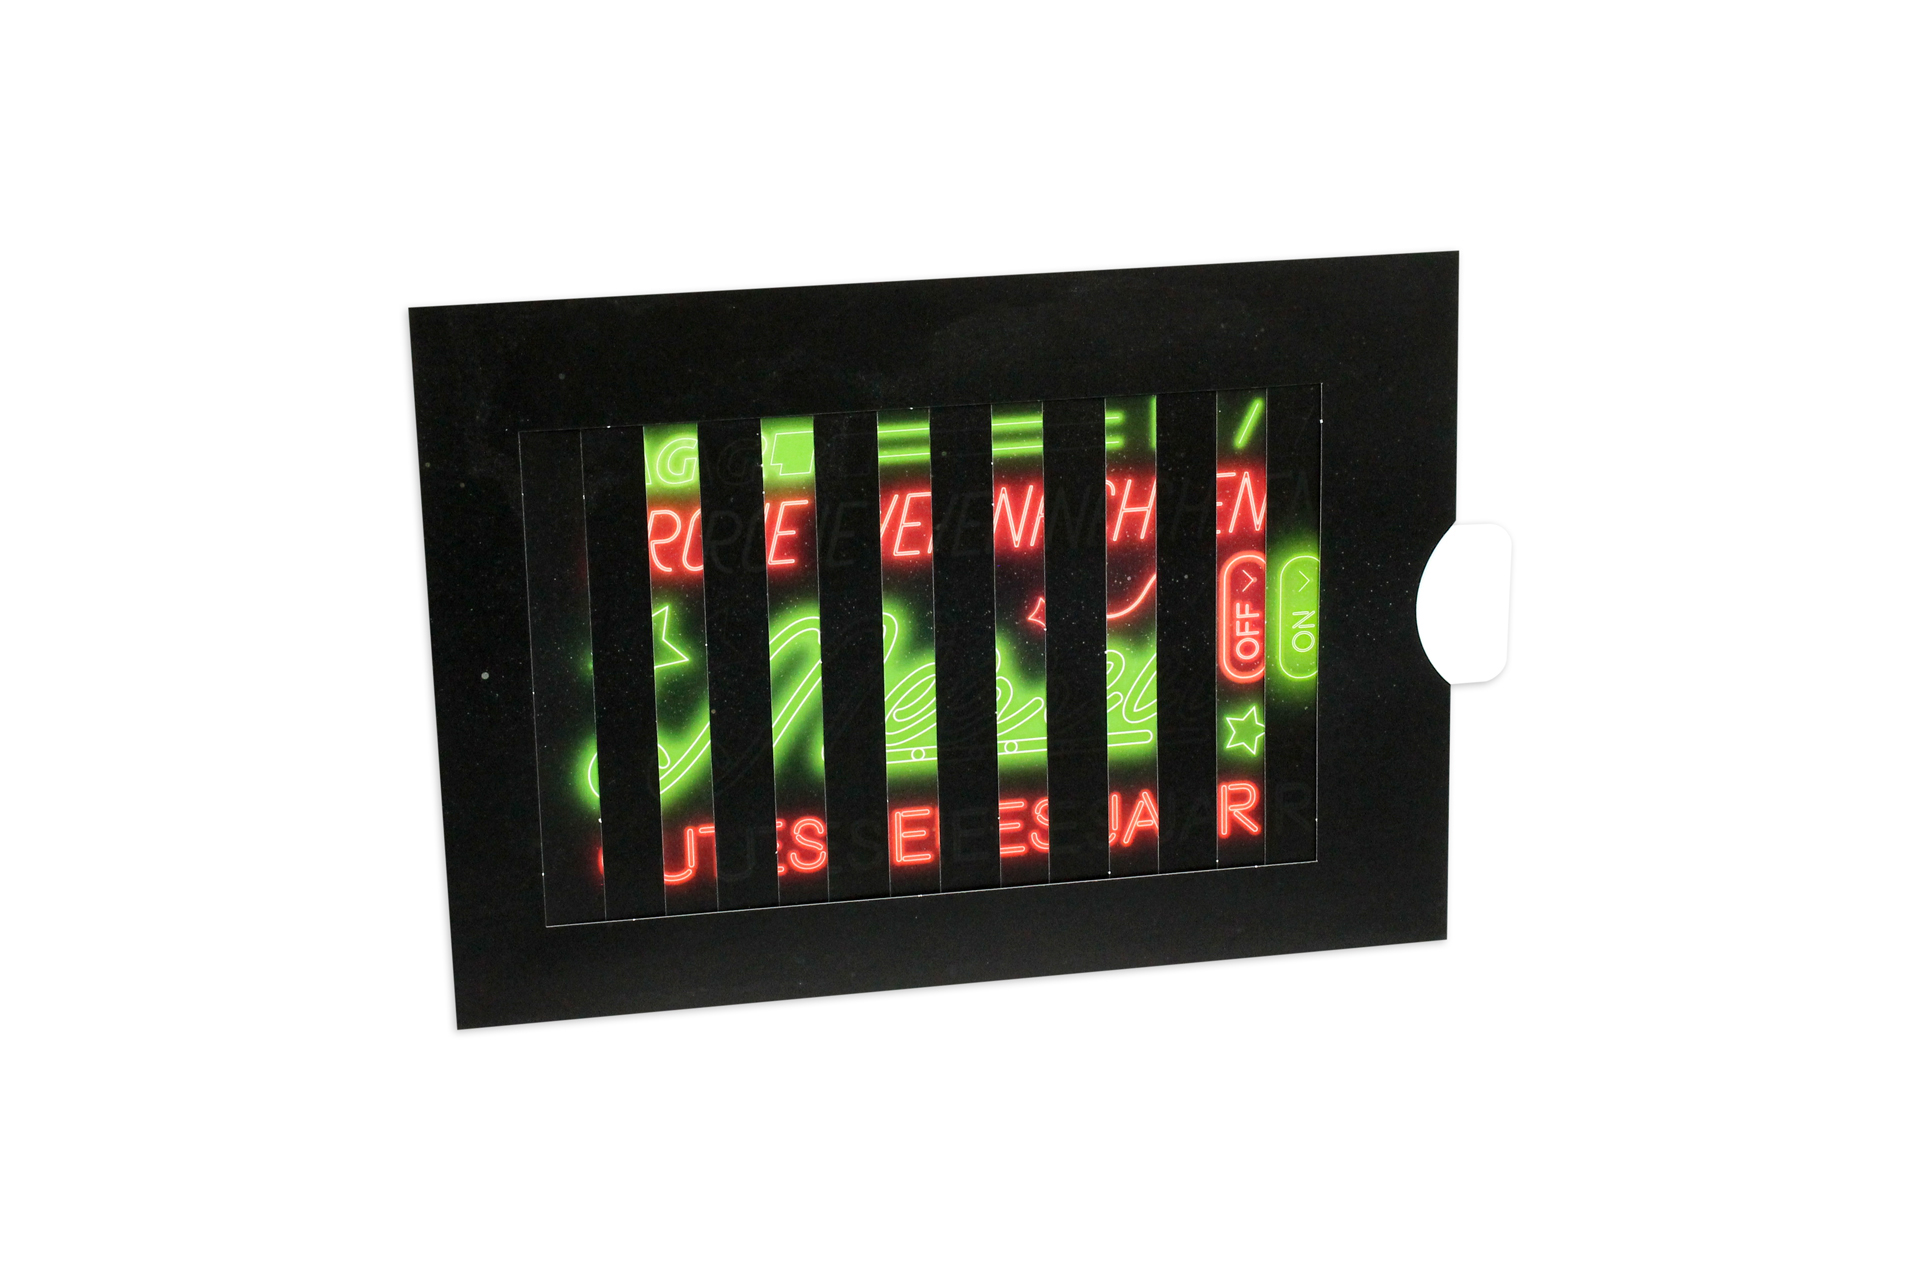 Schwarze, teilweise aufgezogene Lamellenkarte mit roter und grüner Leuchtreklame-Schrift